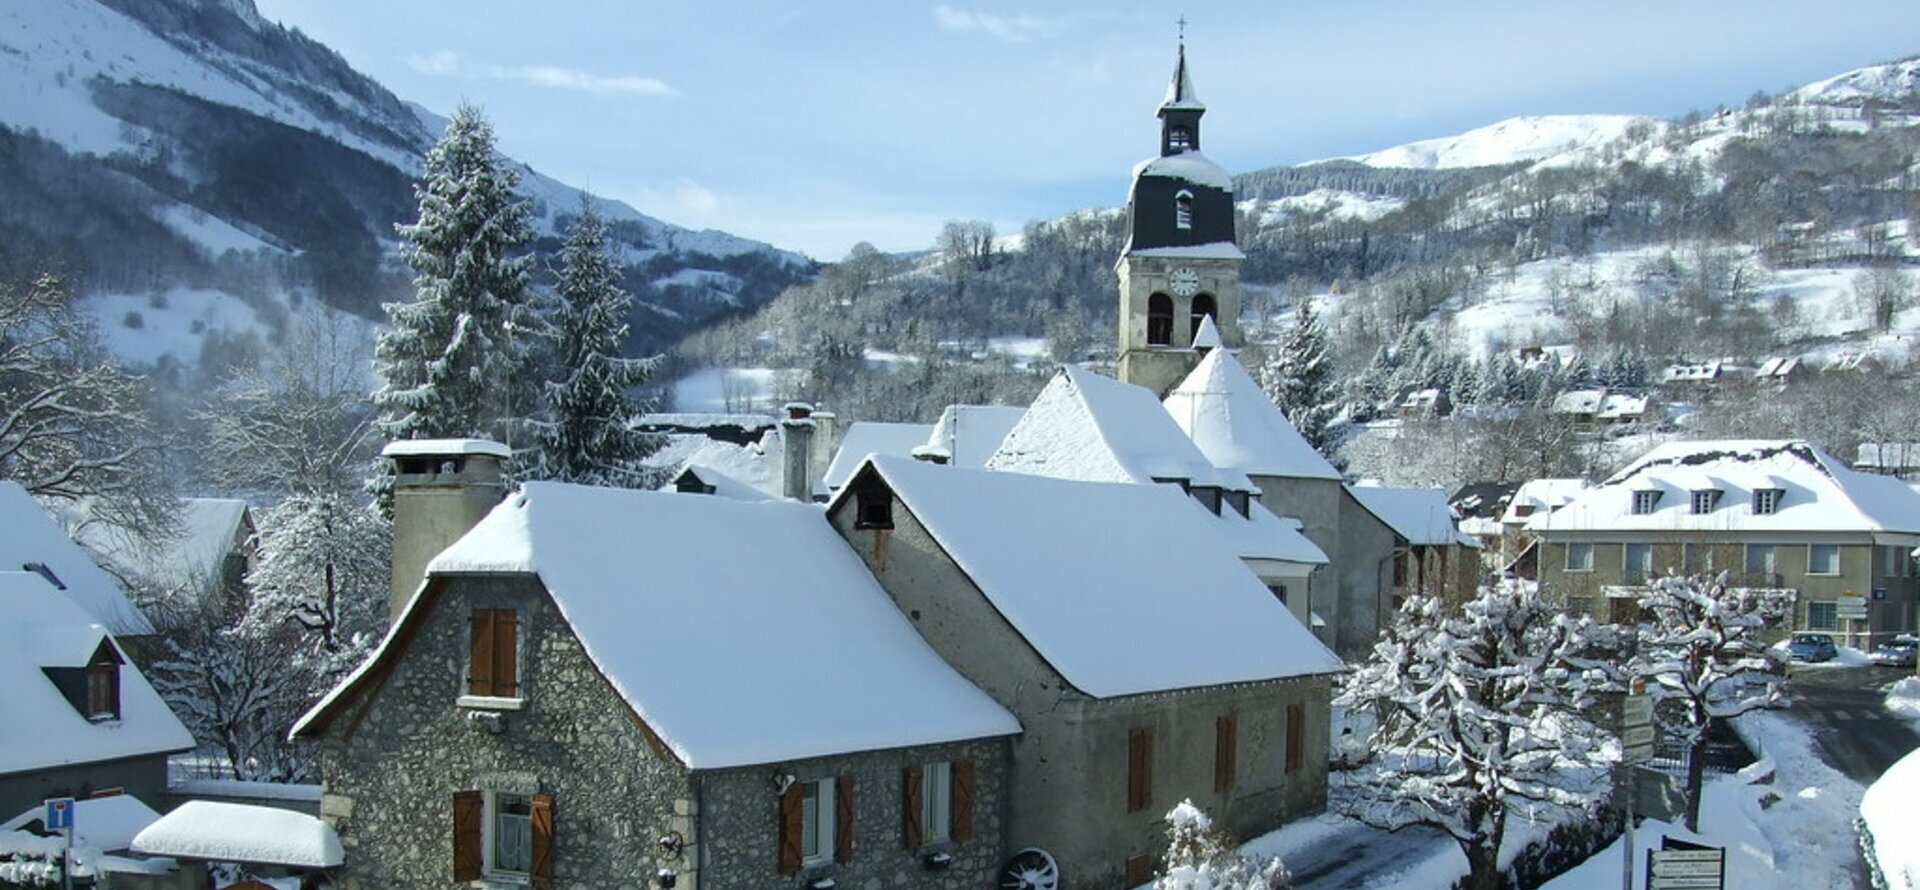 Arrens-Marsous est un village de montagne qui se trouve dans le département des Hautes-Pyrénées